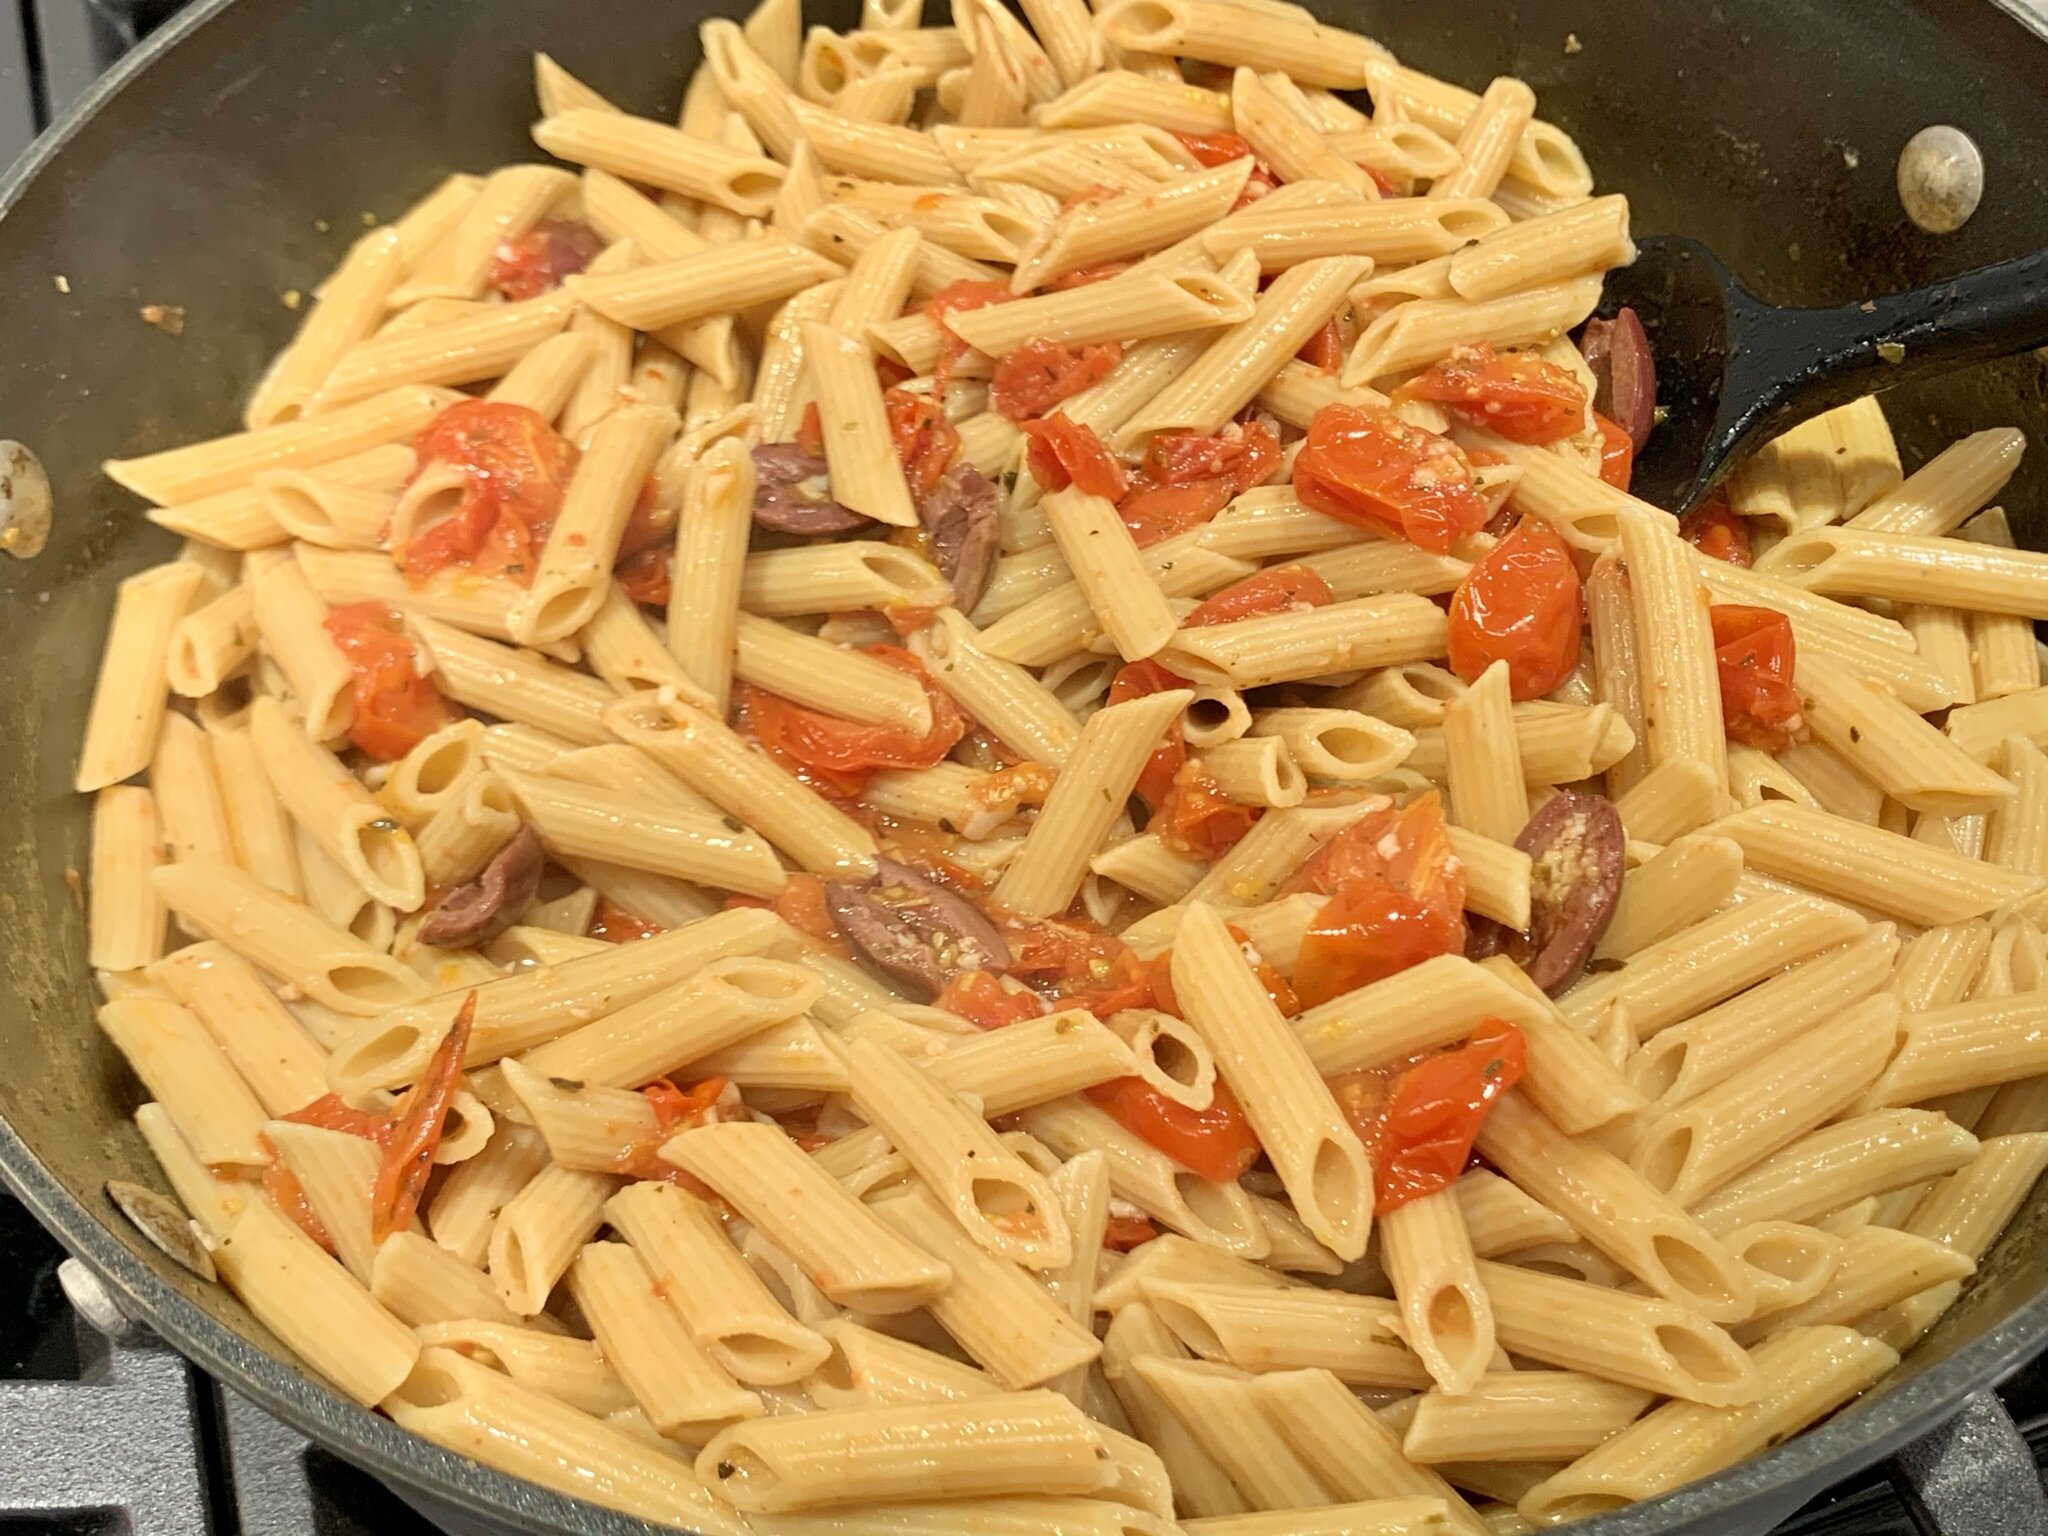 b) Coat pasta w/ sauce.